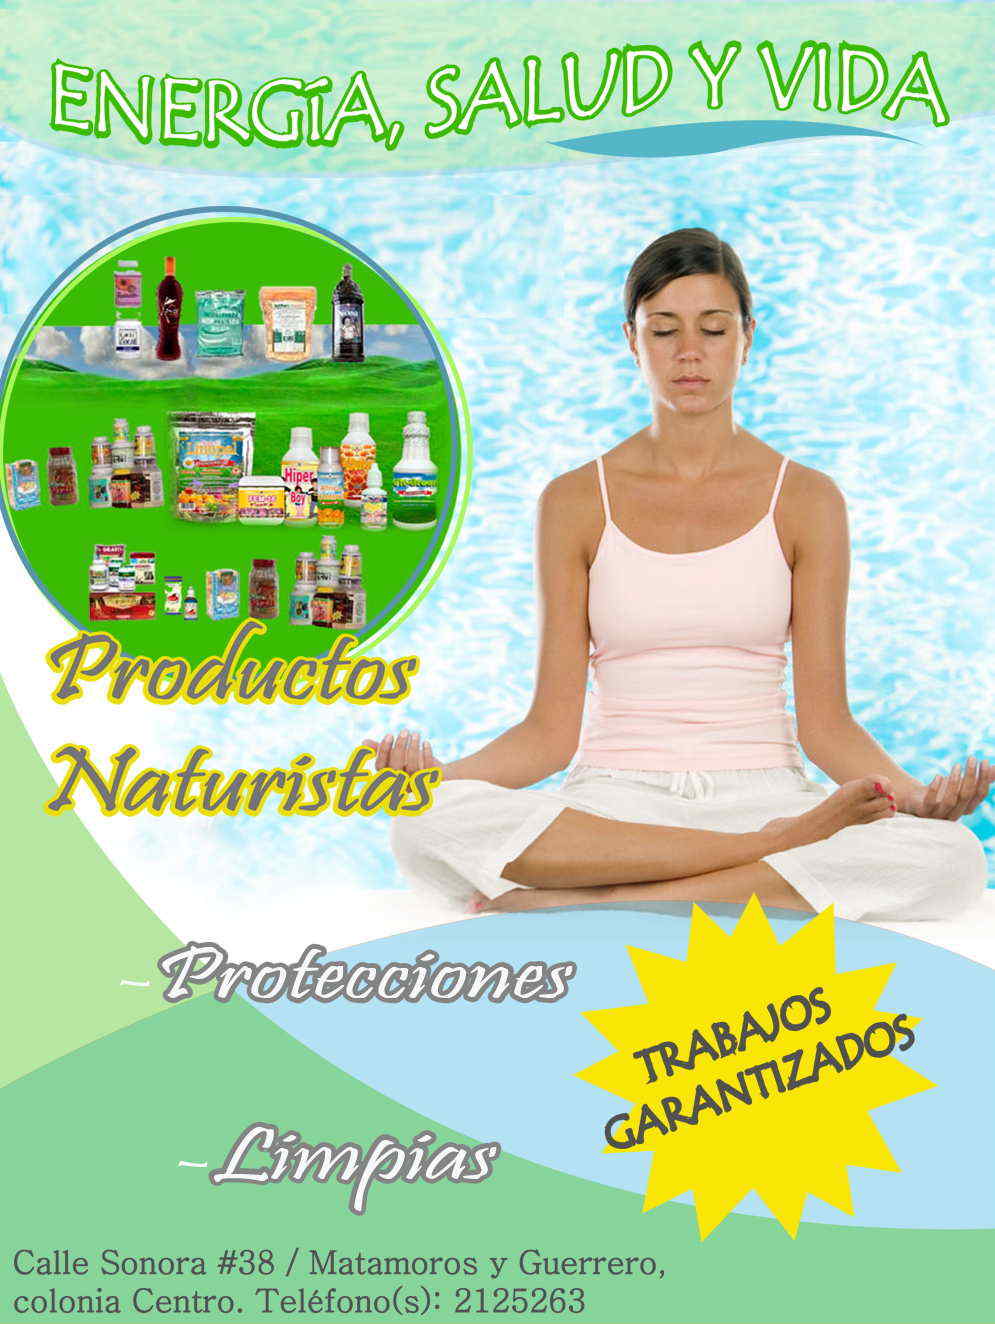 Energia Salud y Vida-Productos naturistas, protecciones, limpias y trabajos garantizados.    